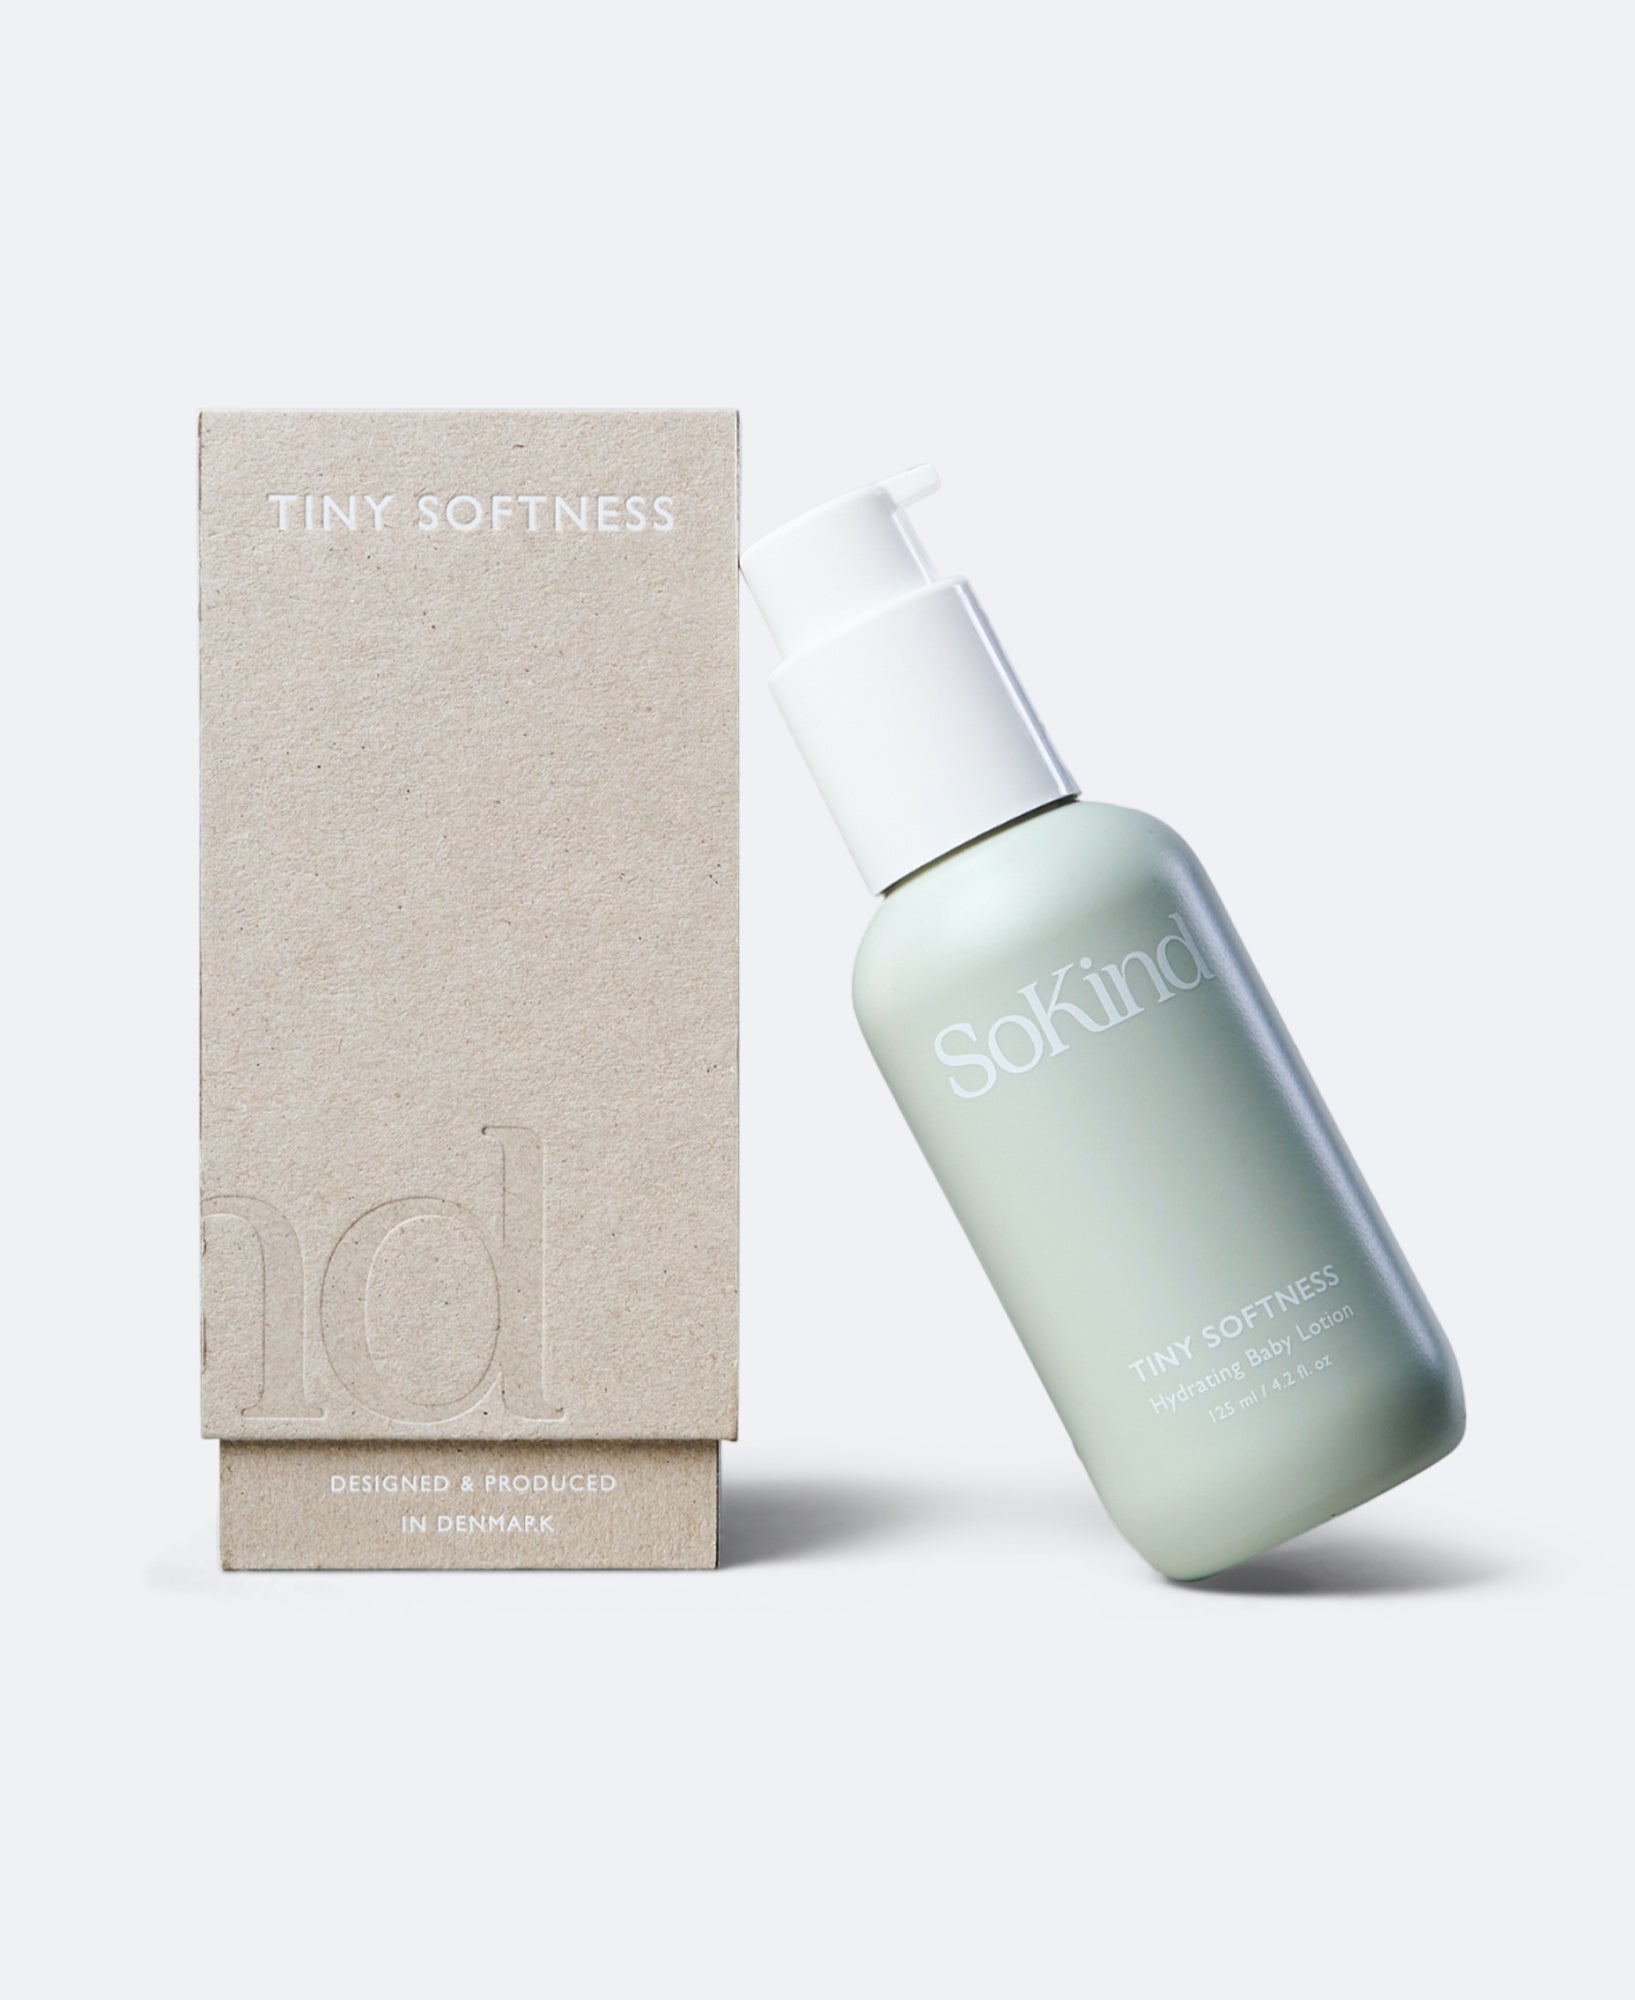 Productfoto van de Tiny Softness Babylotion van SoKind met het doosje waarin dat product zit.